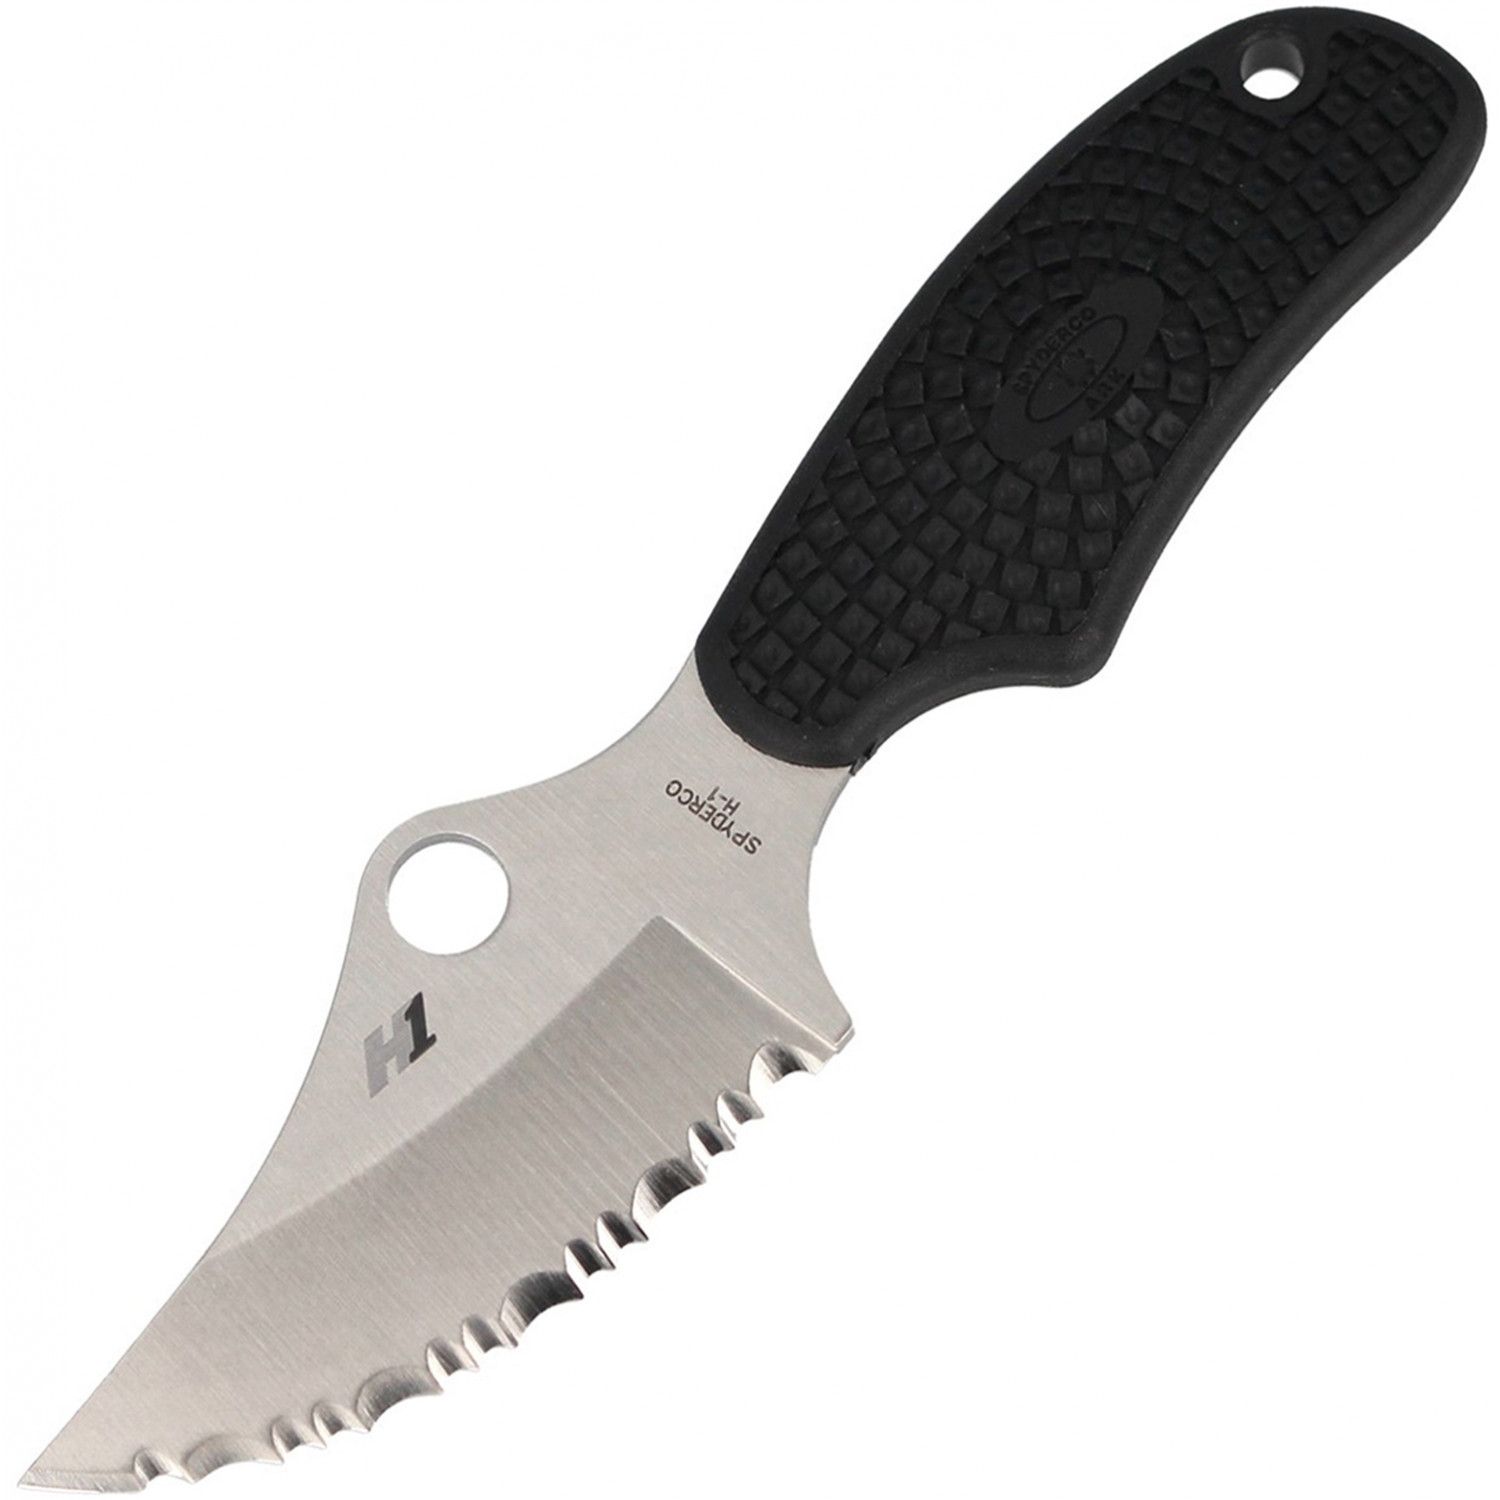 Нож с фиксированным клинком ARK (Always Ready Knife) Spyderco FB35SBK, сталь H1 Satin Serrated (SpyderEdge™), рукоять термопластик FRN, чёрный